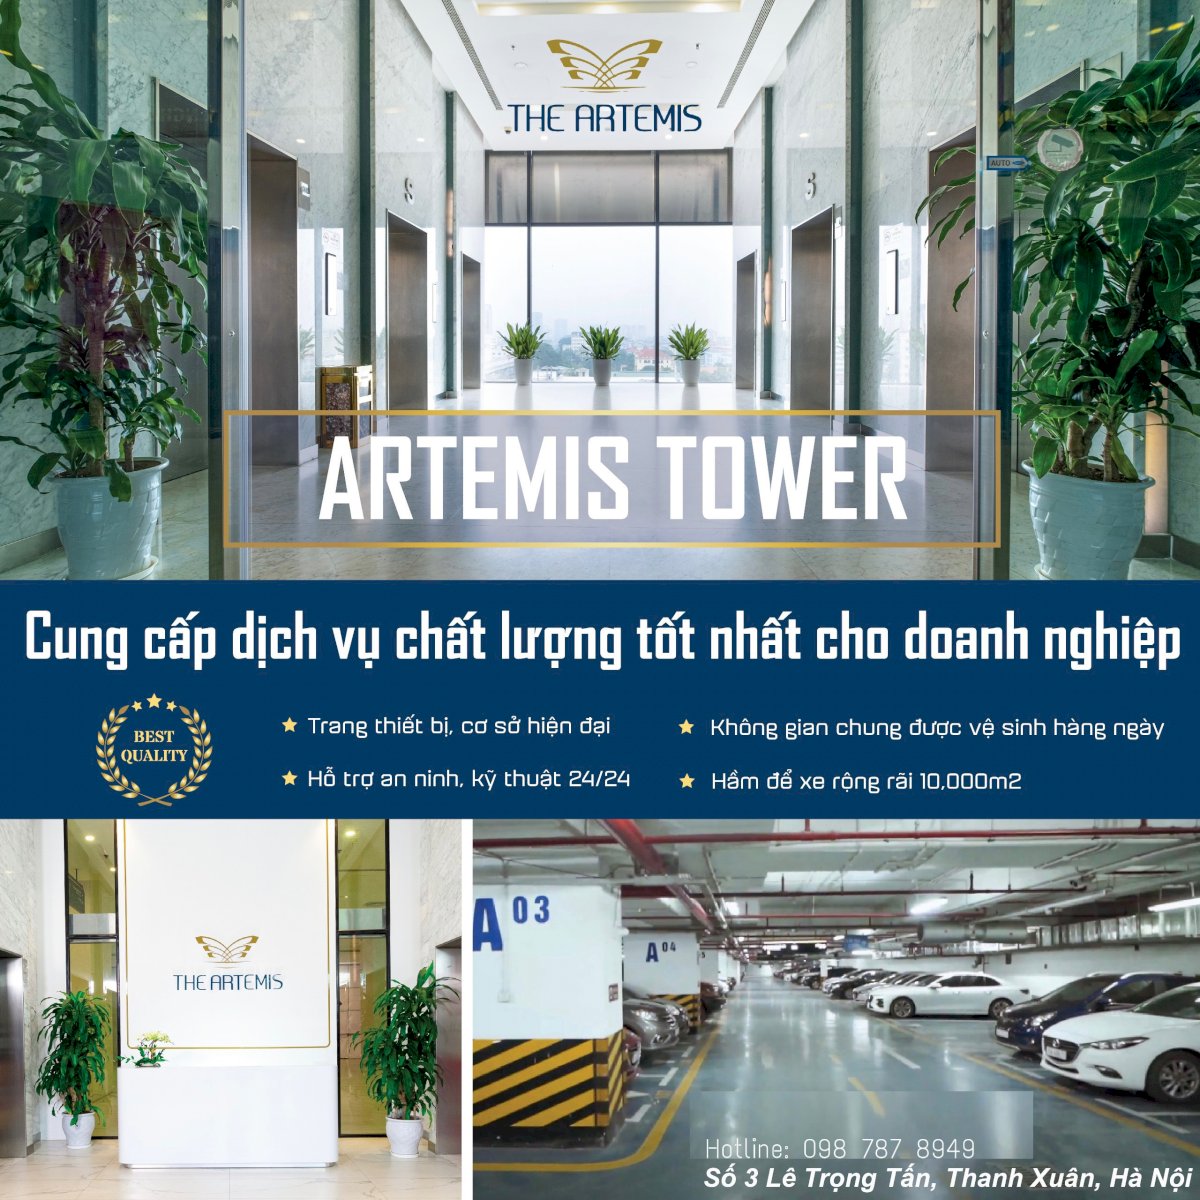 Tòa nhà Artemis (3 Lê Trọng Tấn) cho thuê mặt bằng văn phòng, thương mại giá tốt nhất khu vực Thanh Xuân – Đống Đa